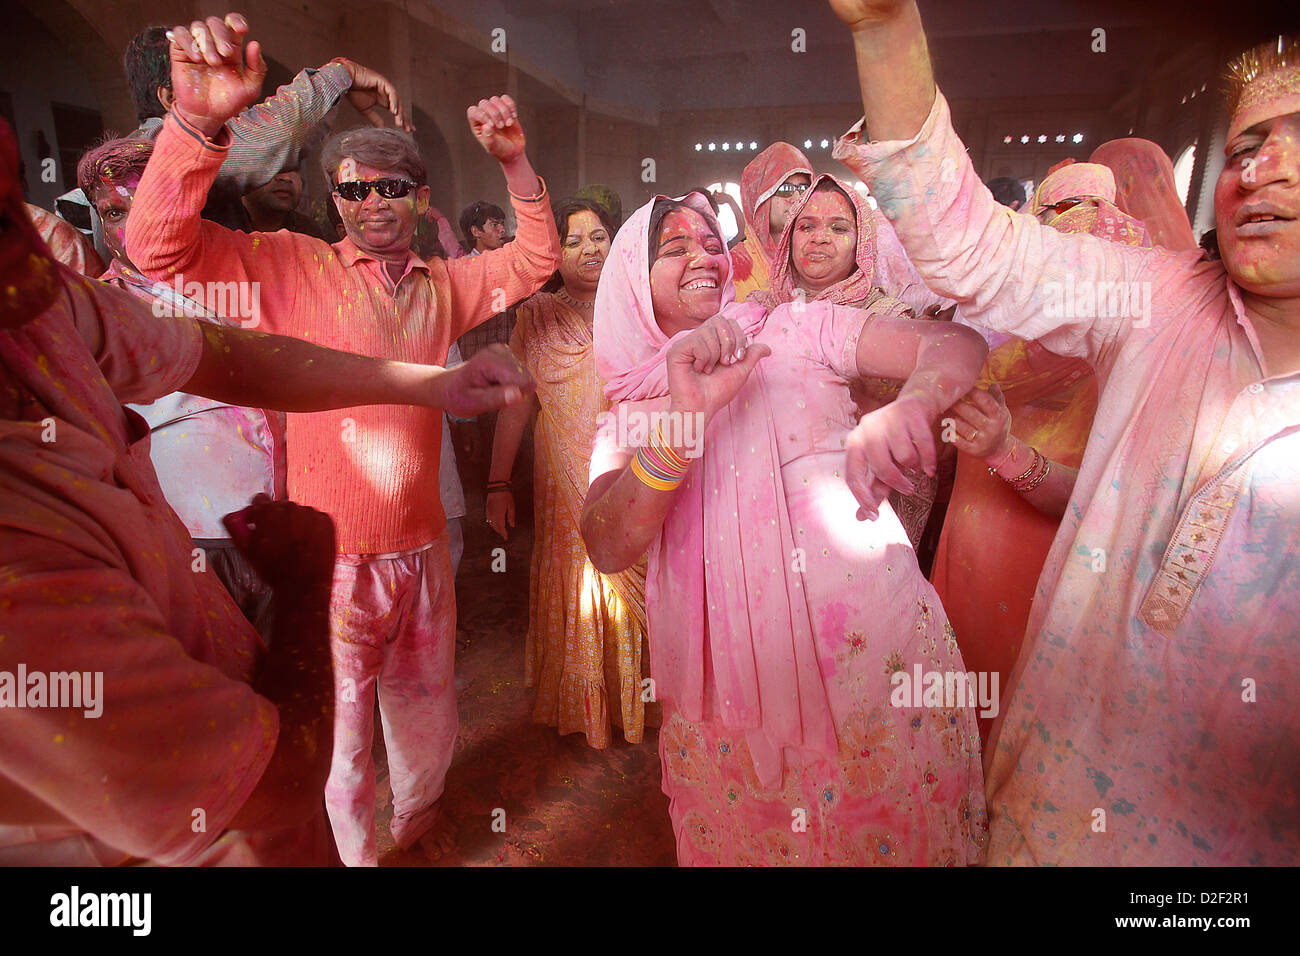 Dancers celebrating Holi festival in Barsana temple India Stock Photo